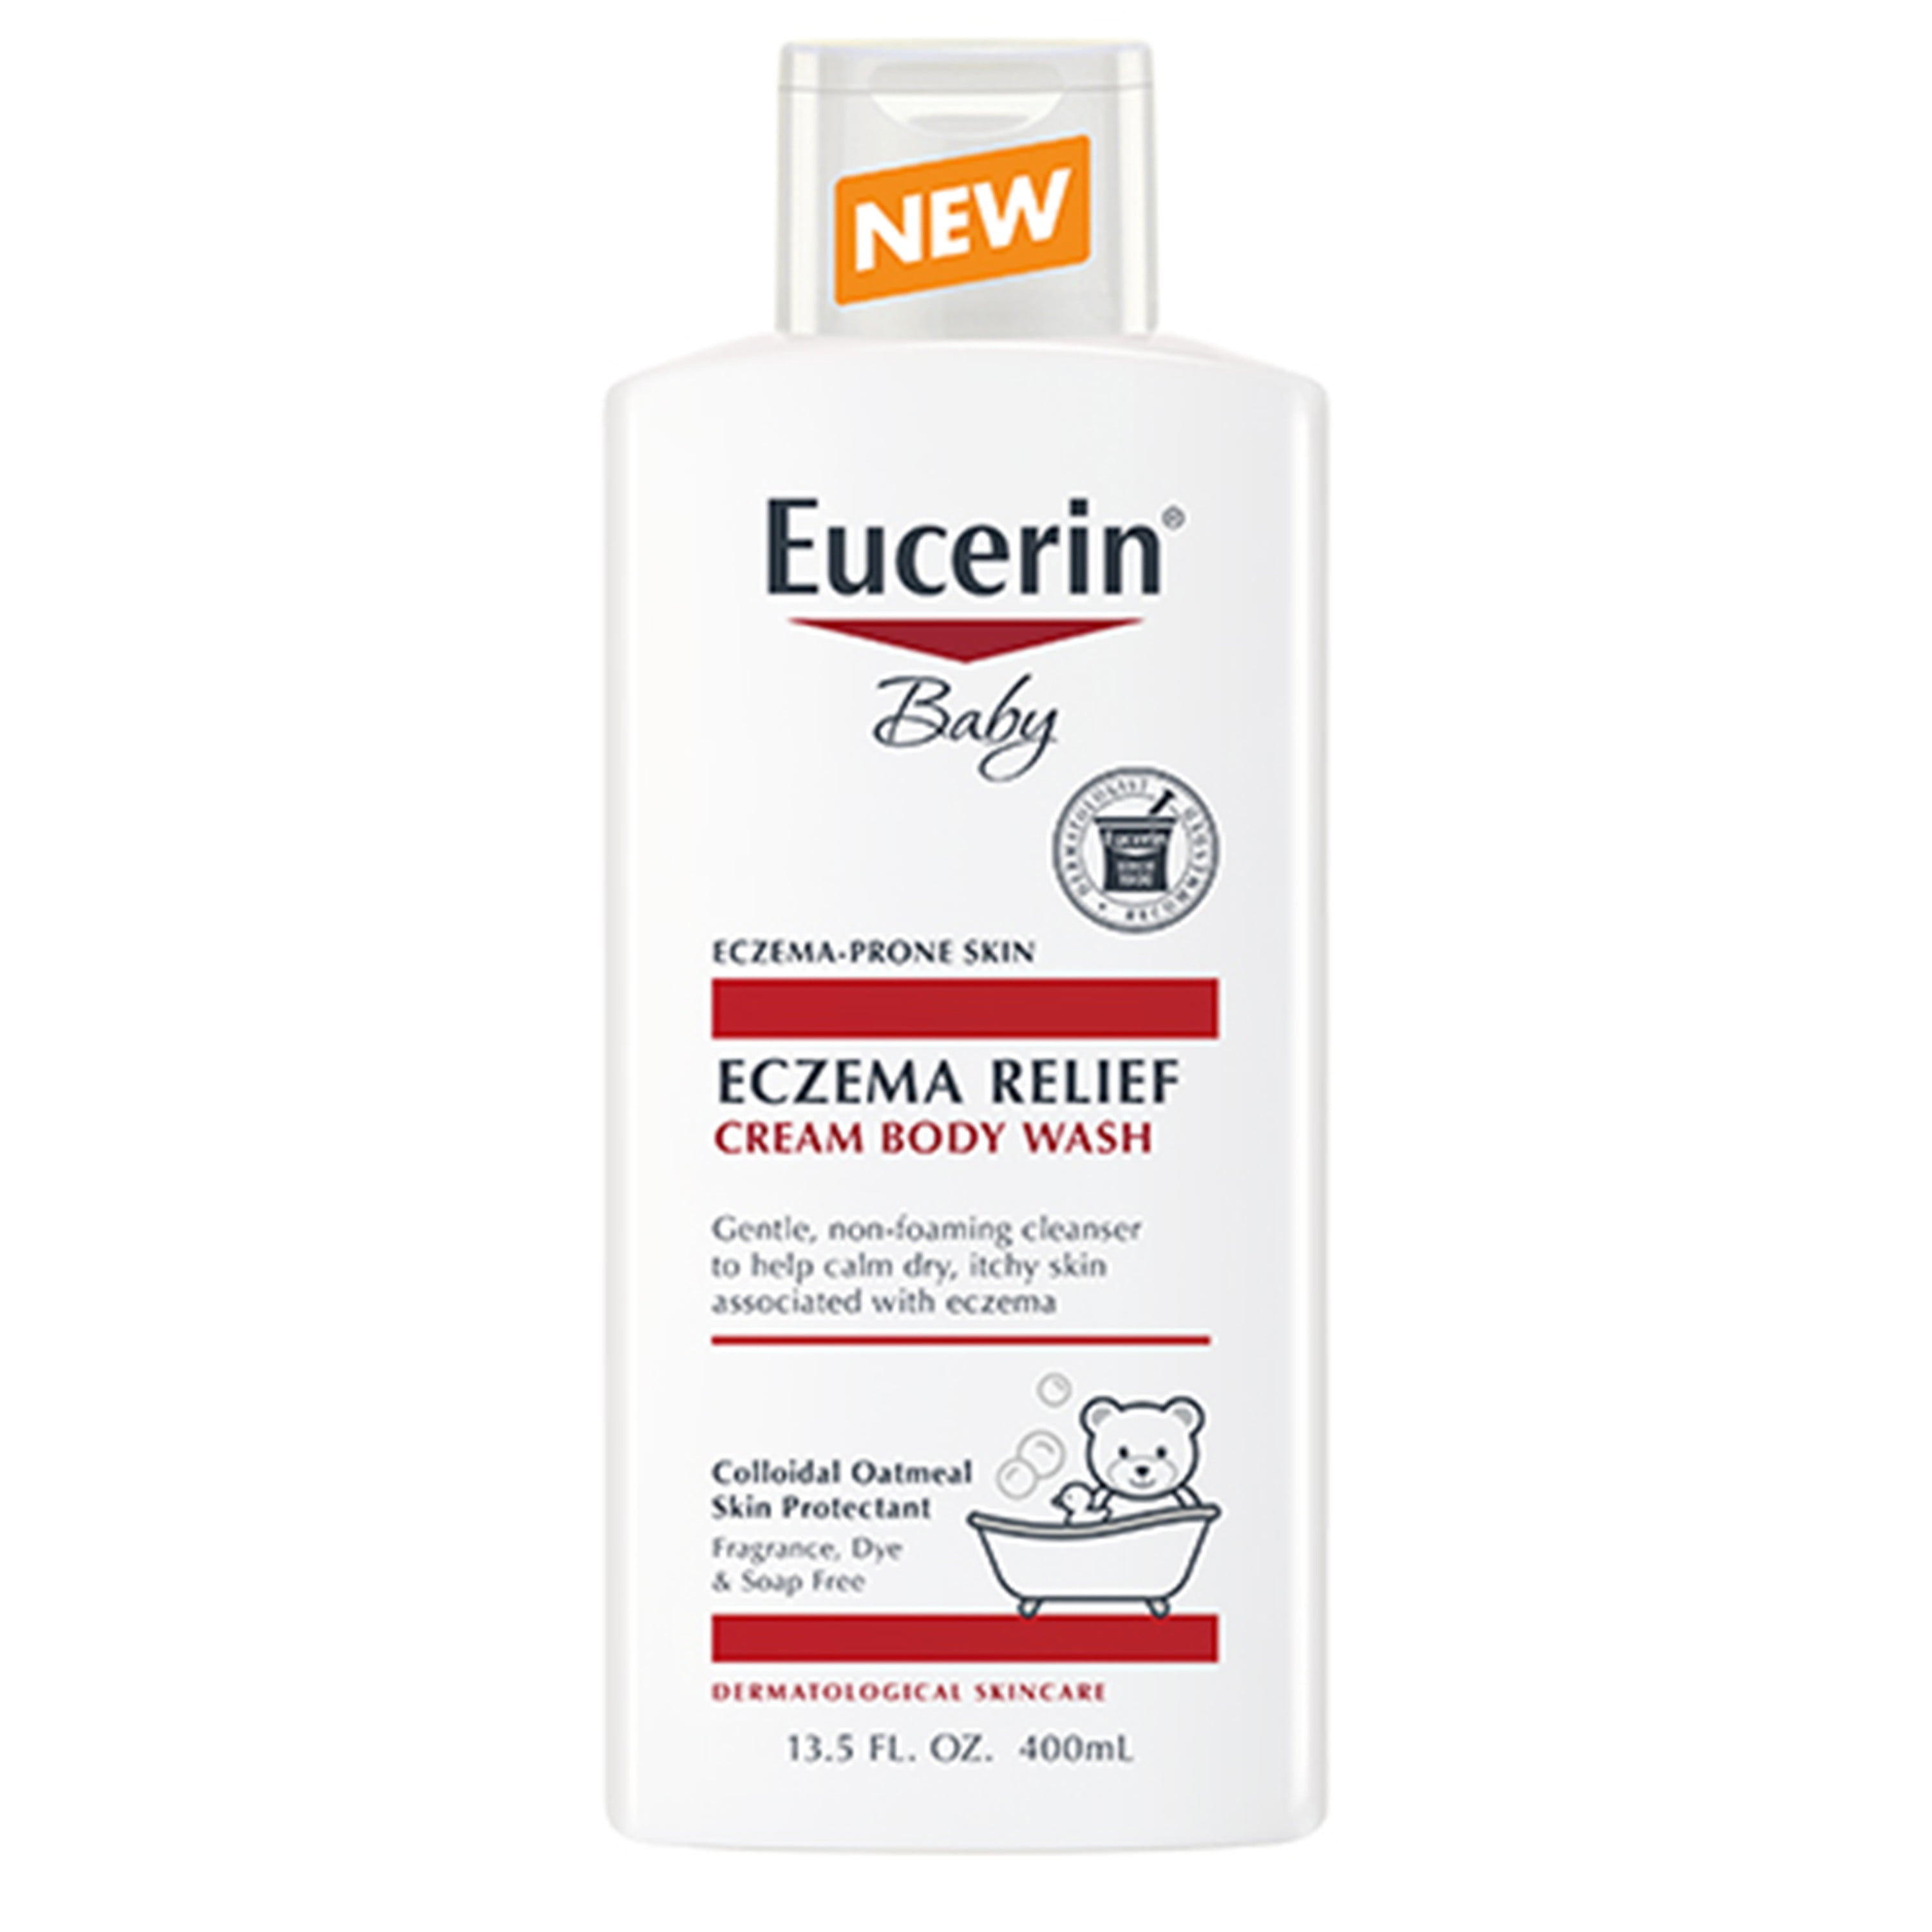 eucerin cream baby